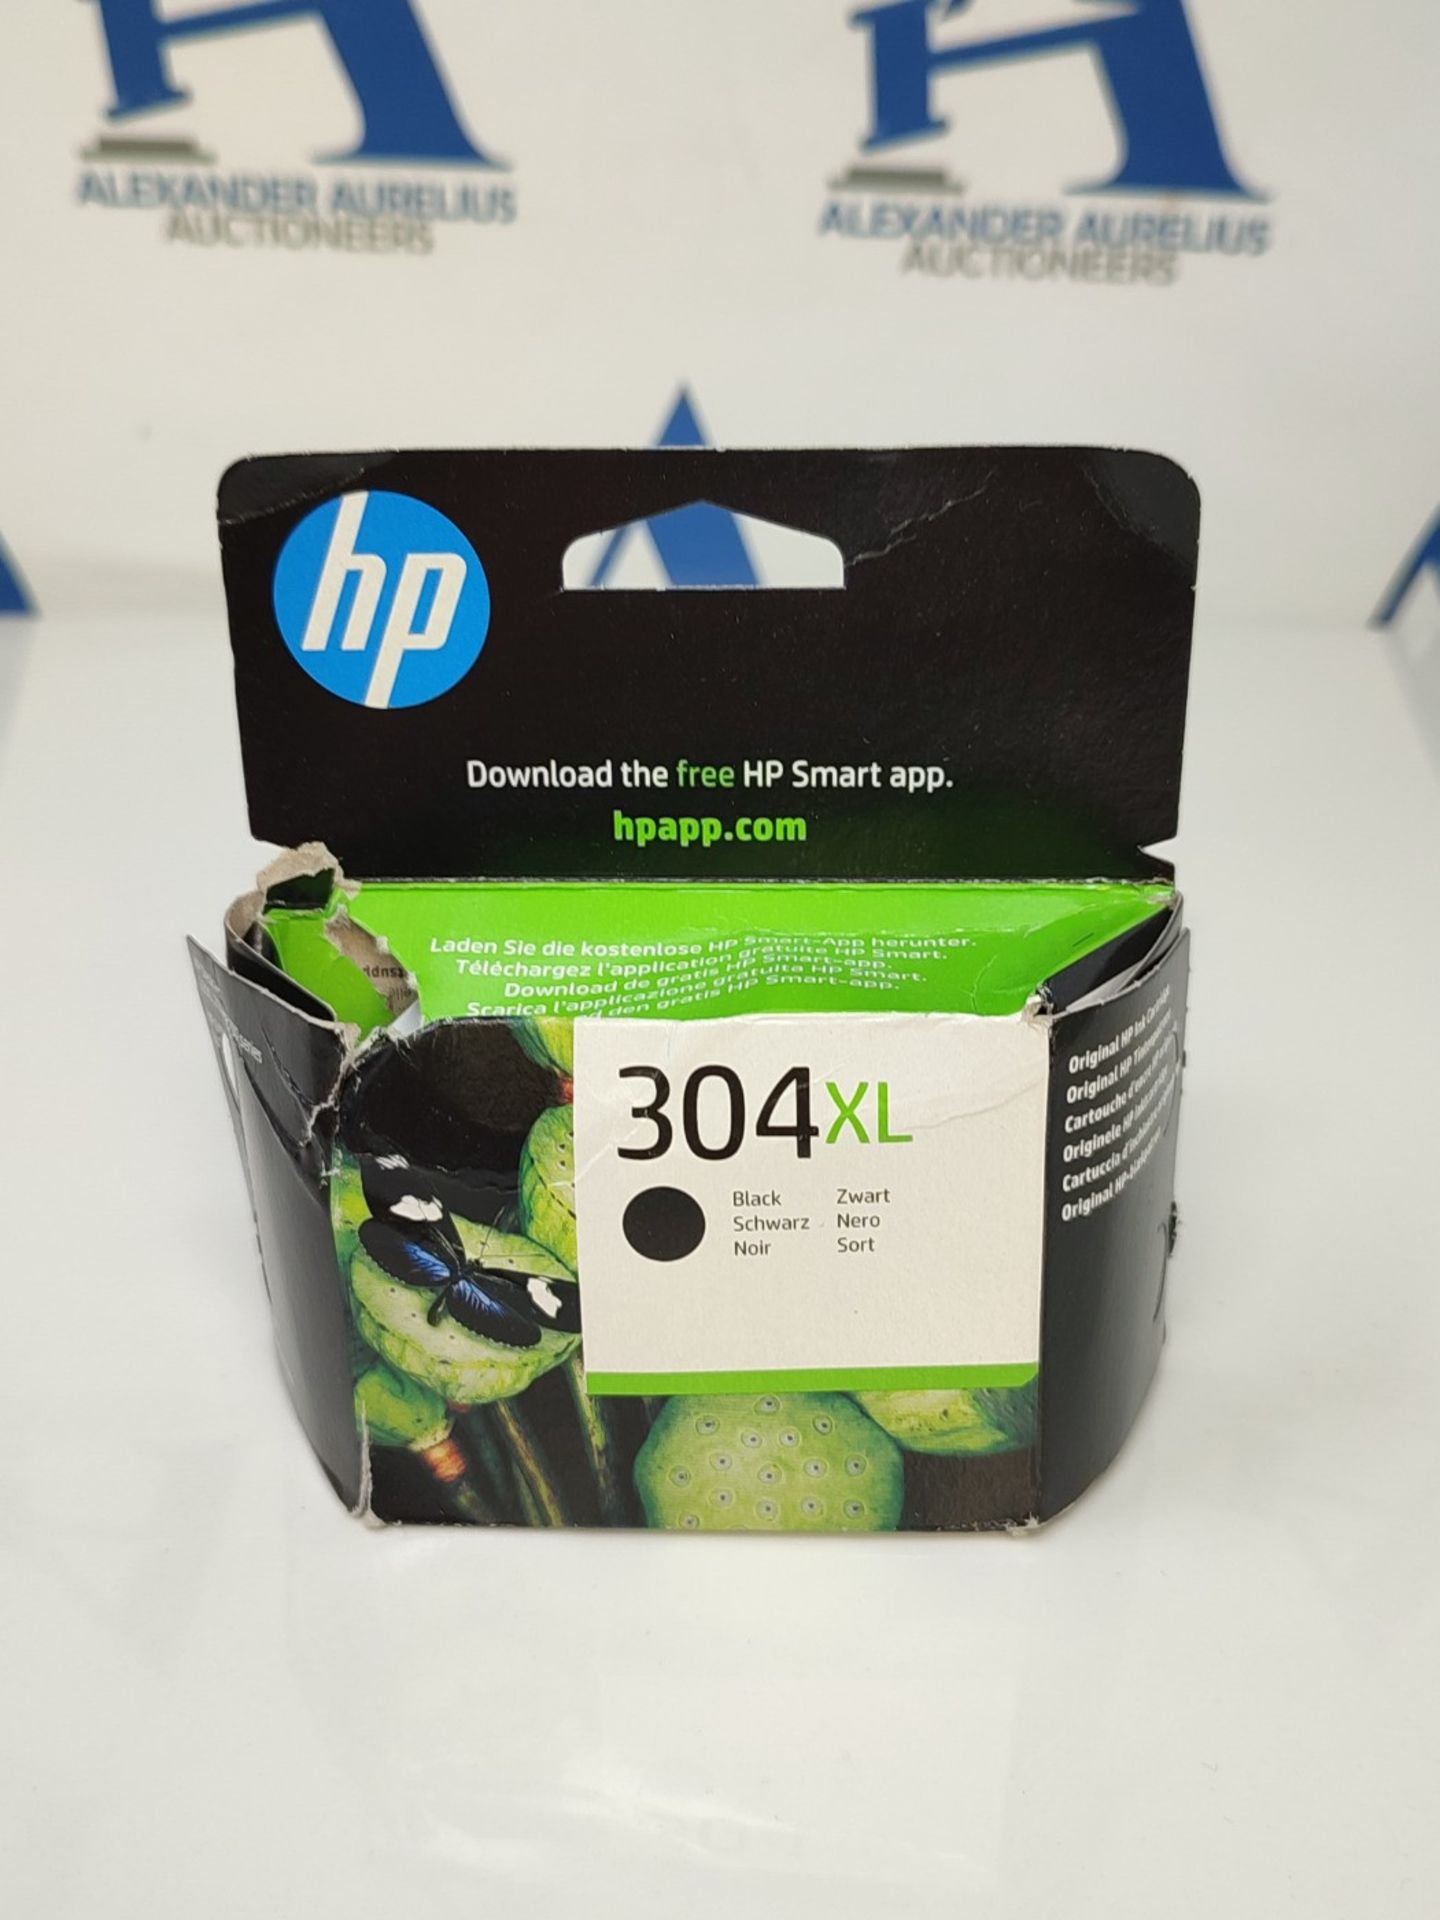 HP N9K08AE 304XL High Yield Original Ink Cartridge, Black, Single Pack - Image 2 of 3